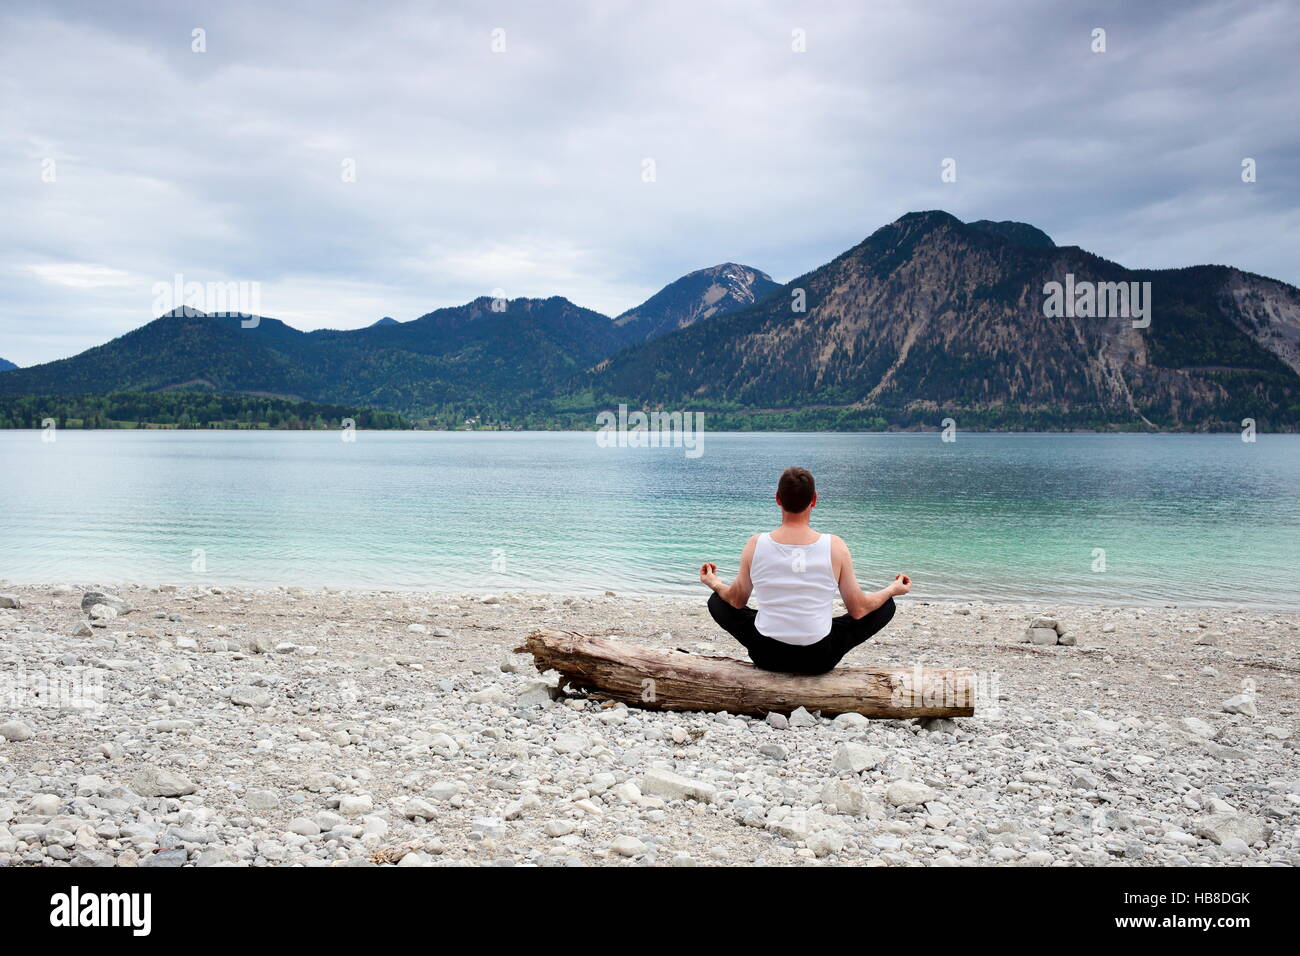 meditation at lake Stock Photo